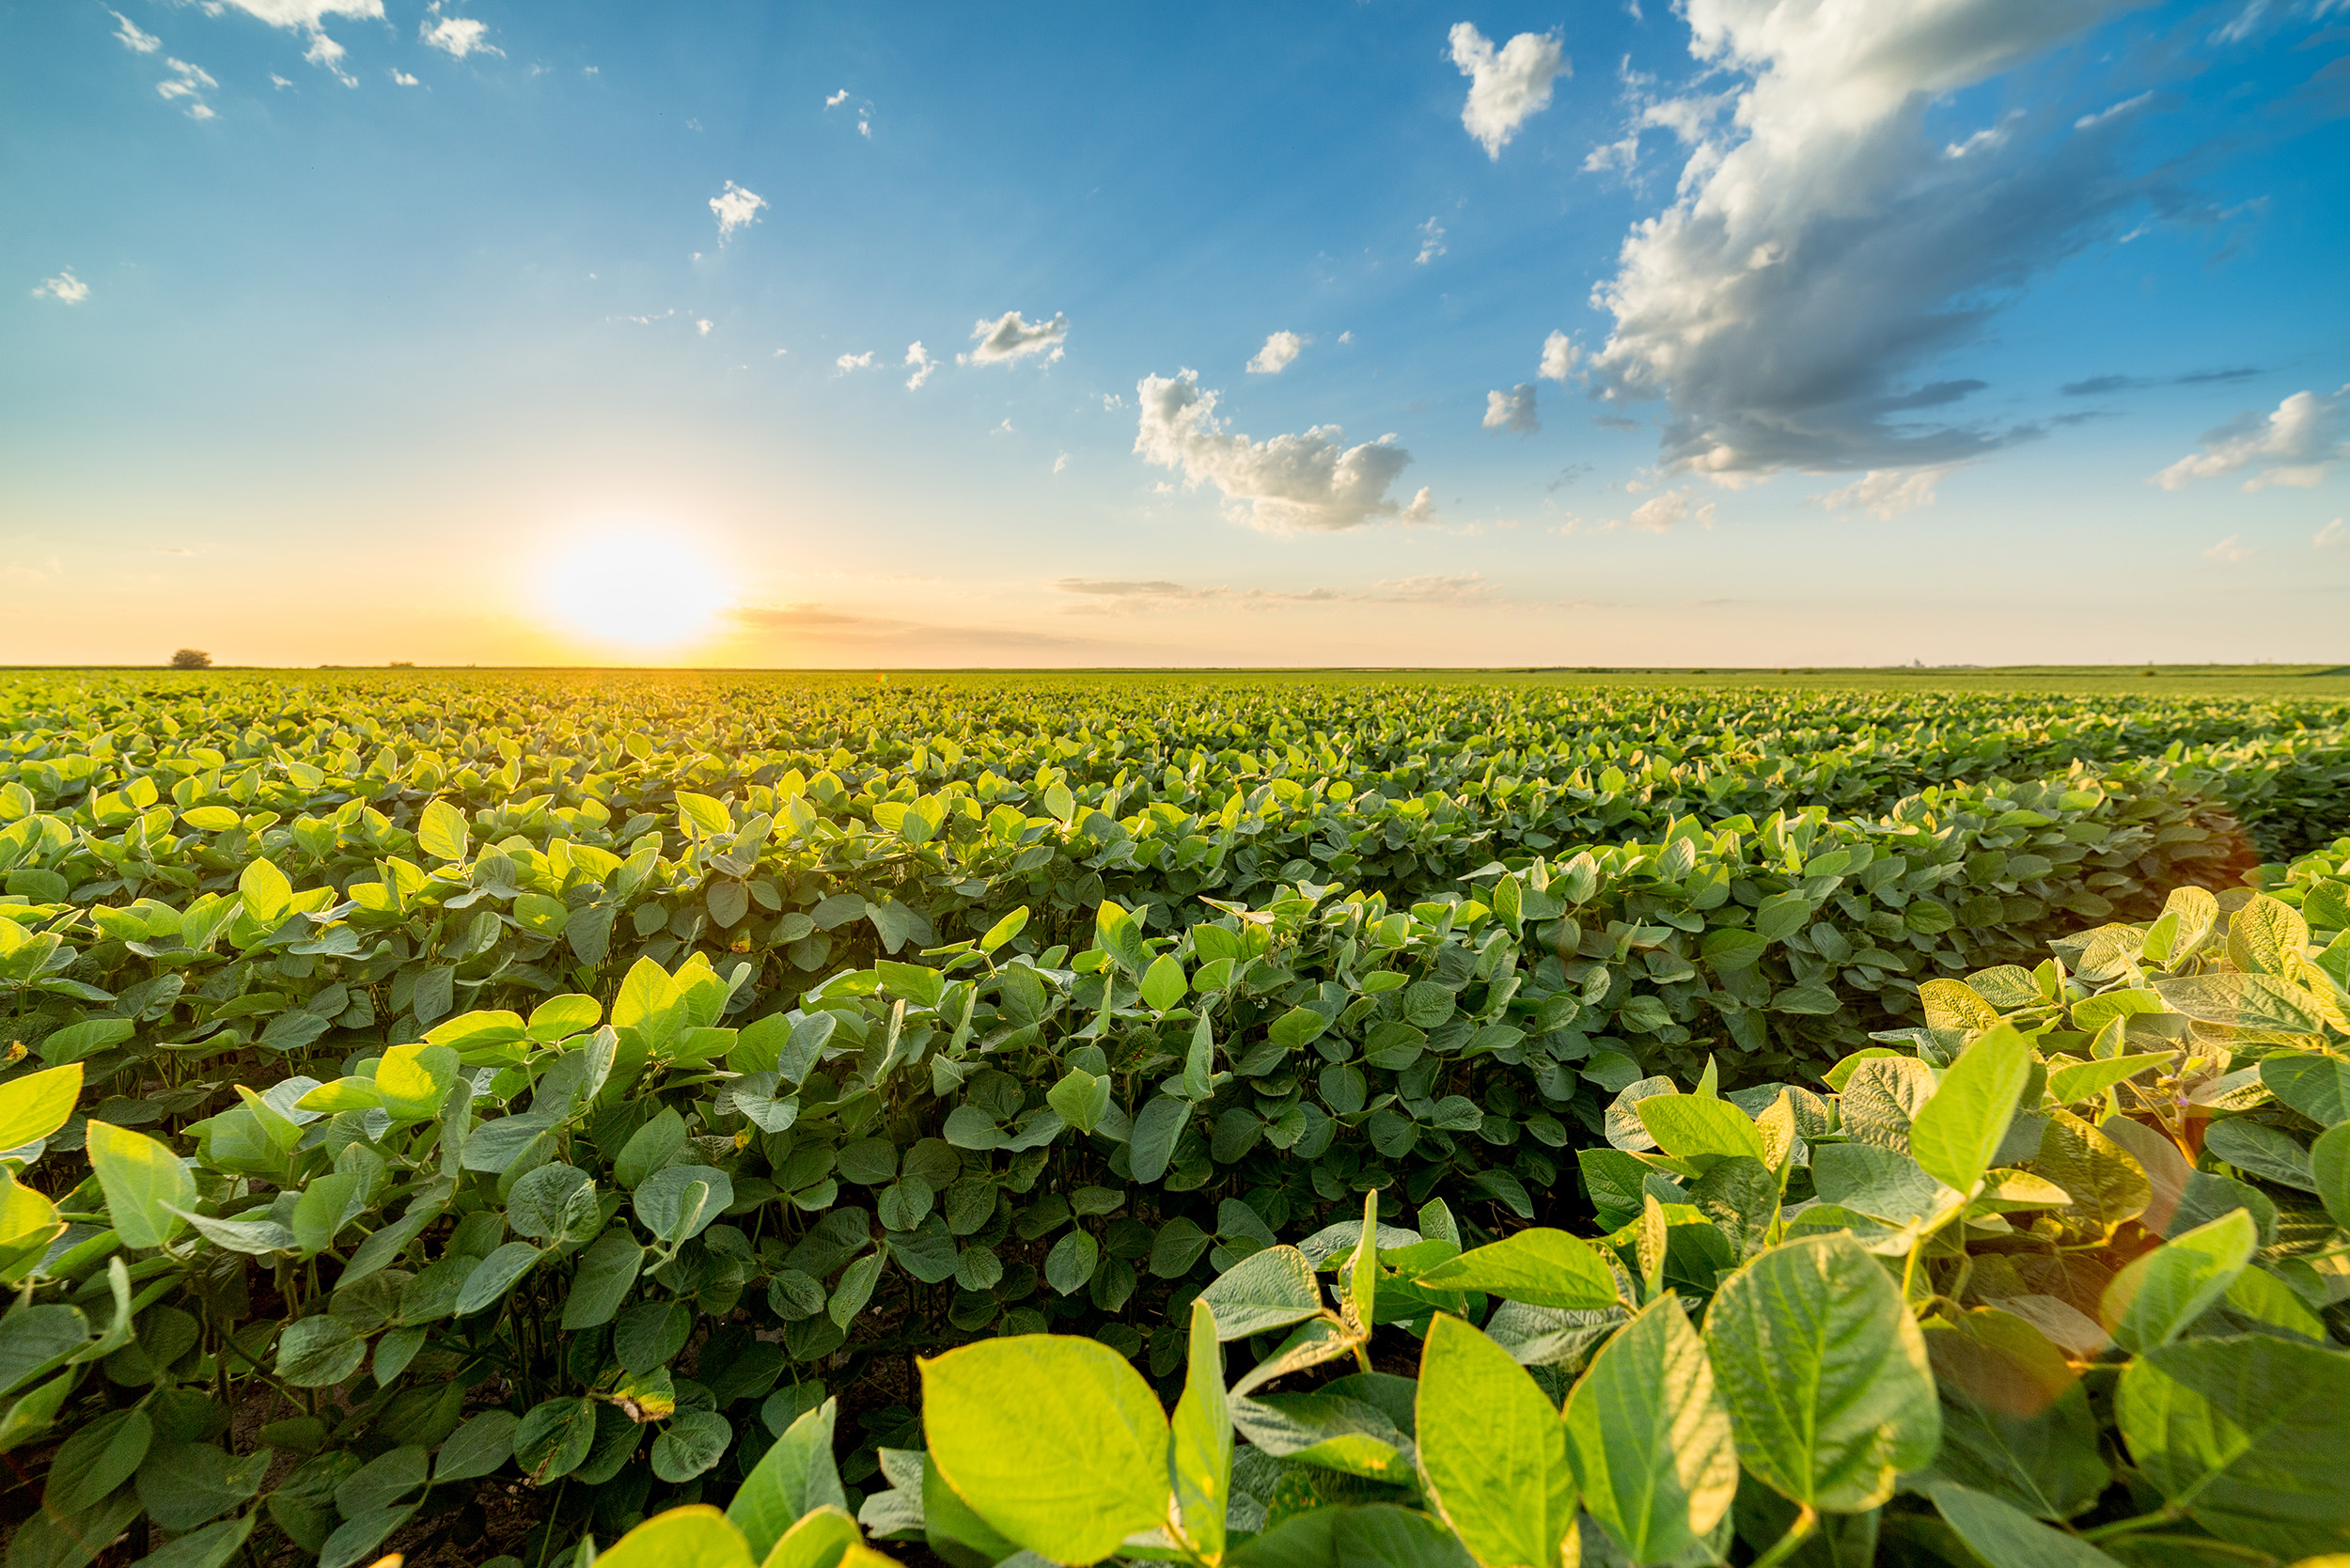 soybean-field-farm-oticki-via-shutterstock